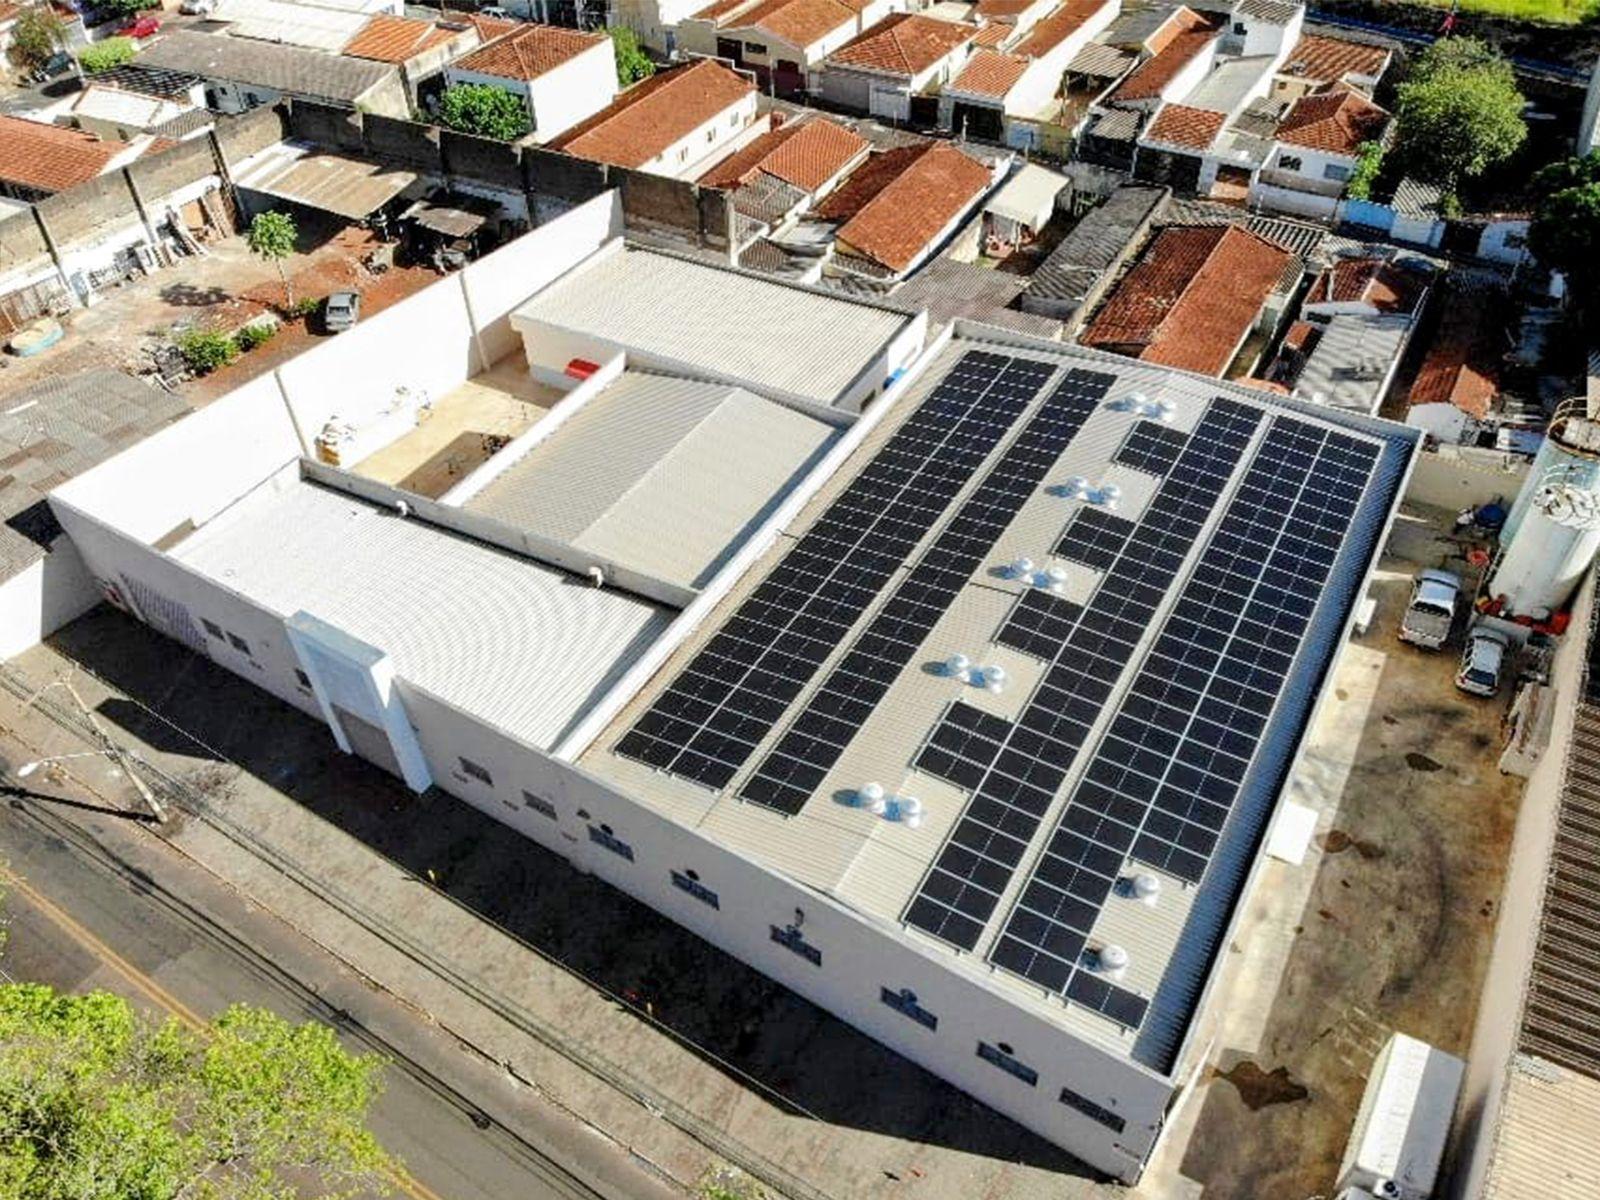 170 PV-panelen geïnstalleerd op het dak brengen de totale systeemgrootte op 90,1 kW in Ribeirão Preto-SP, Brazilië (1)